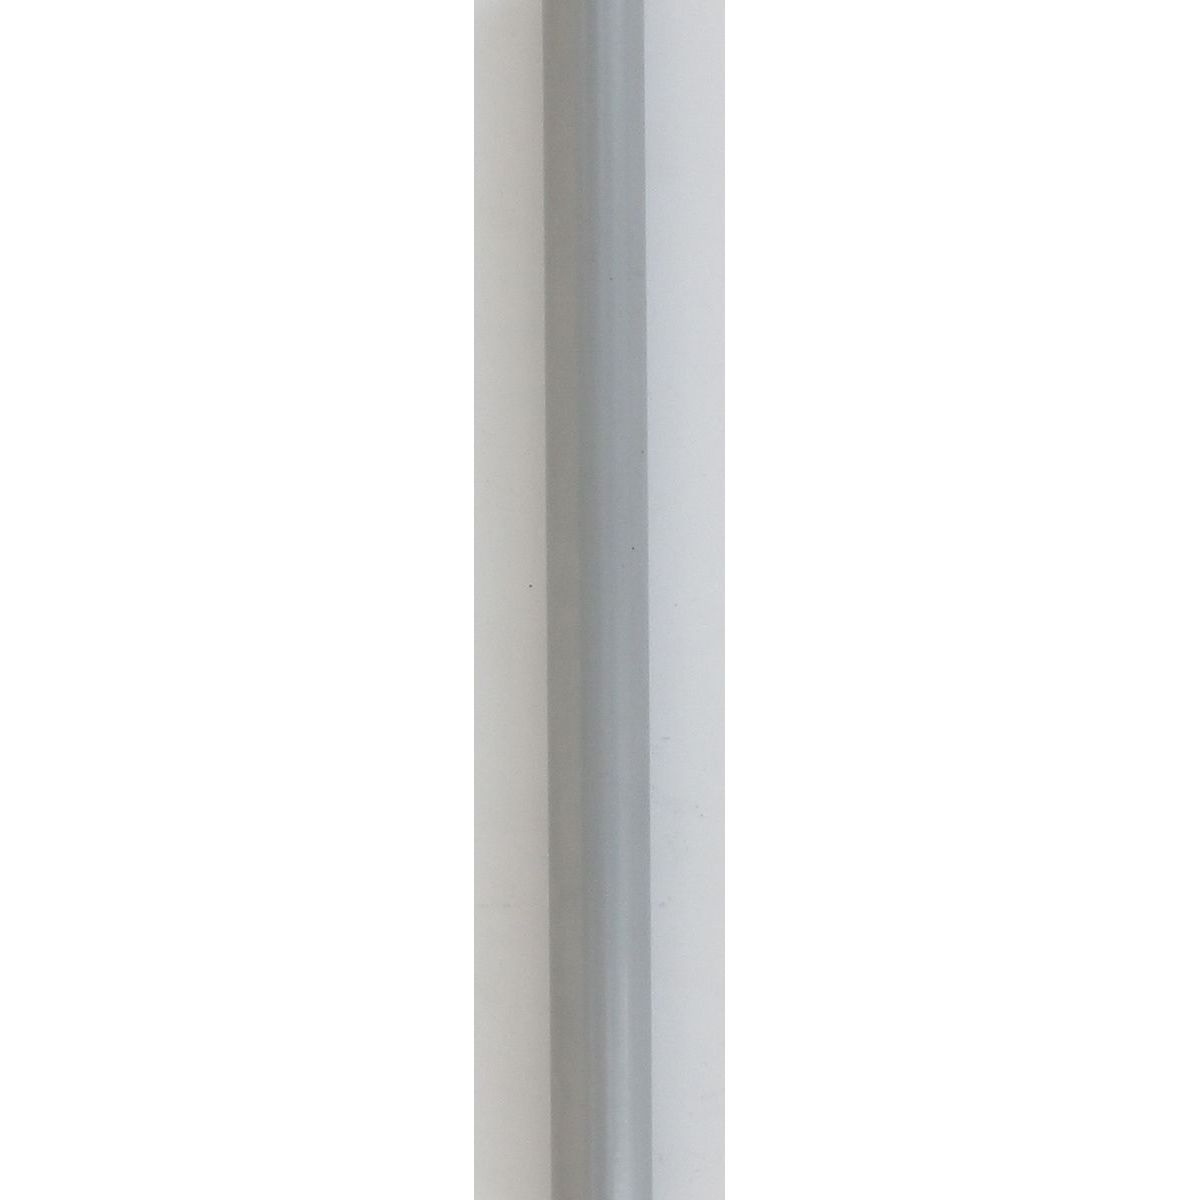 Barre 1,20 m D16 gris laqué - LUANCE